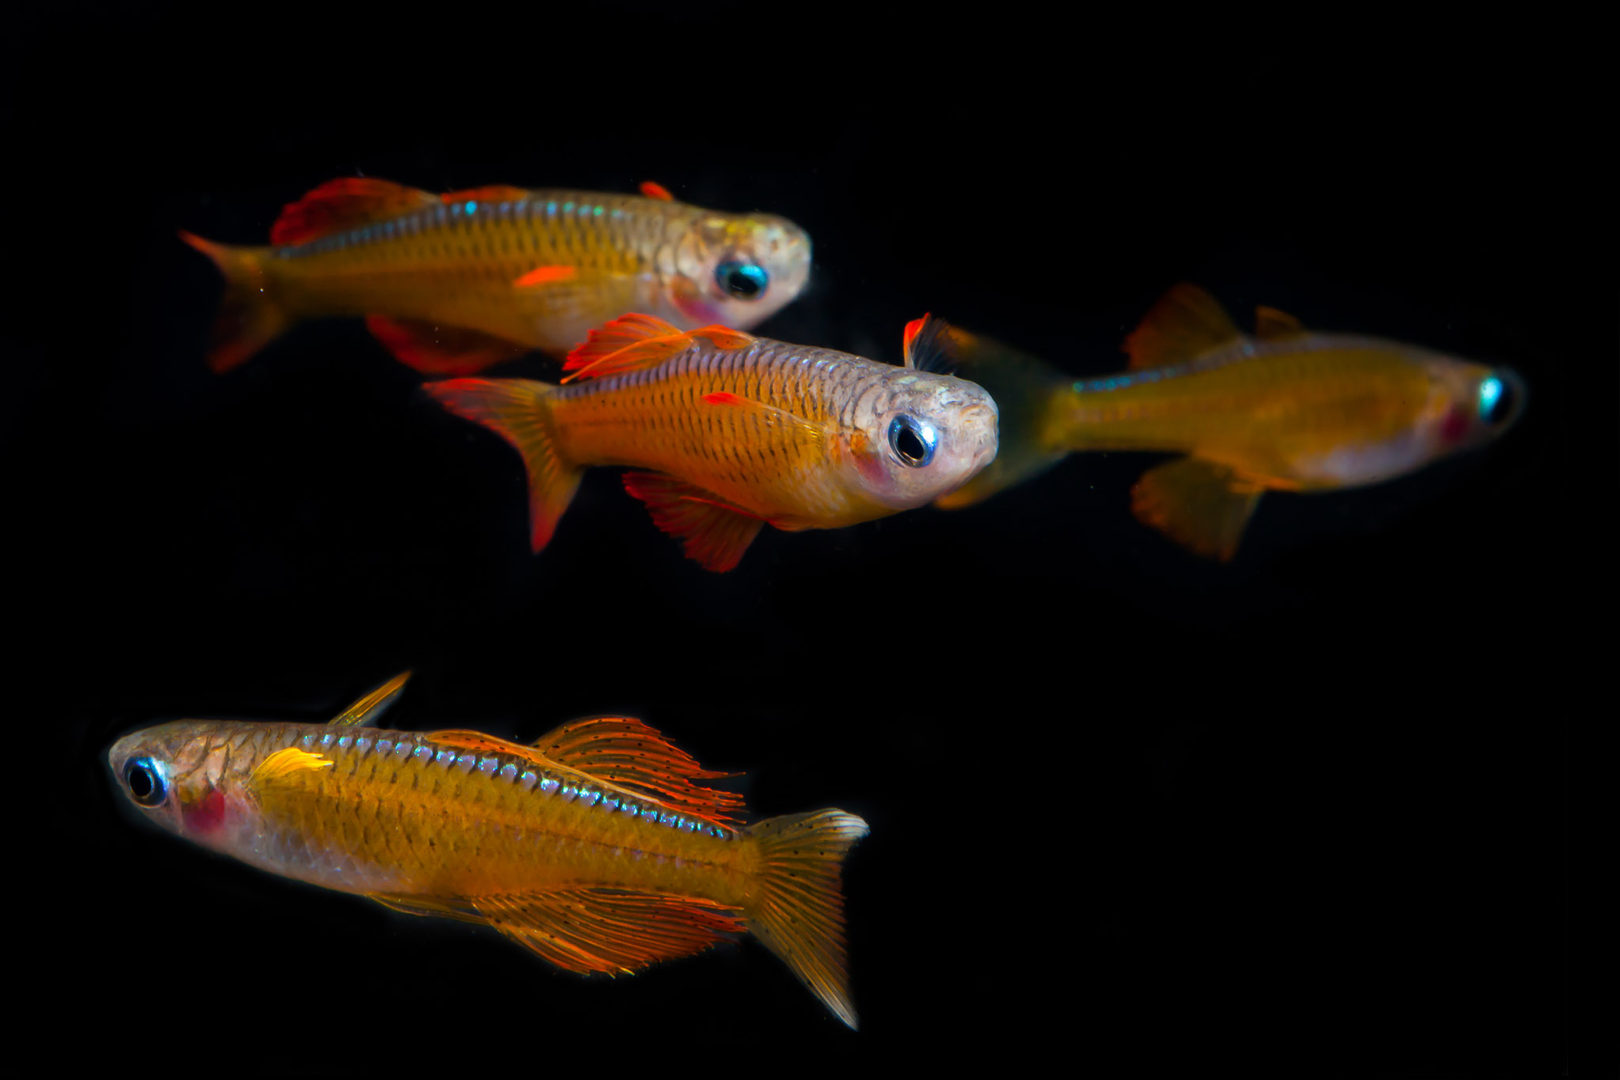 Paskai Rainbowfish - Pseudomugil paskai